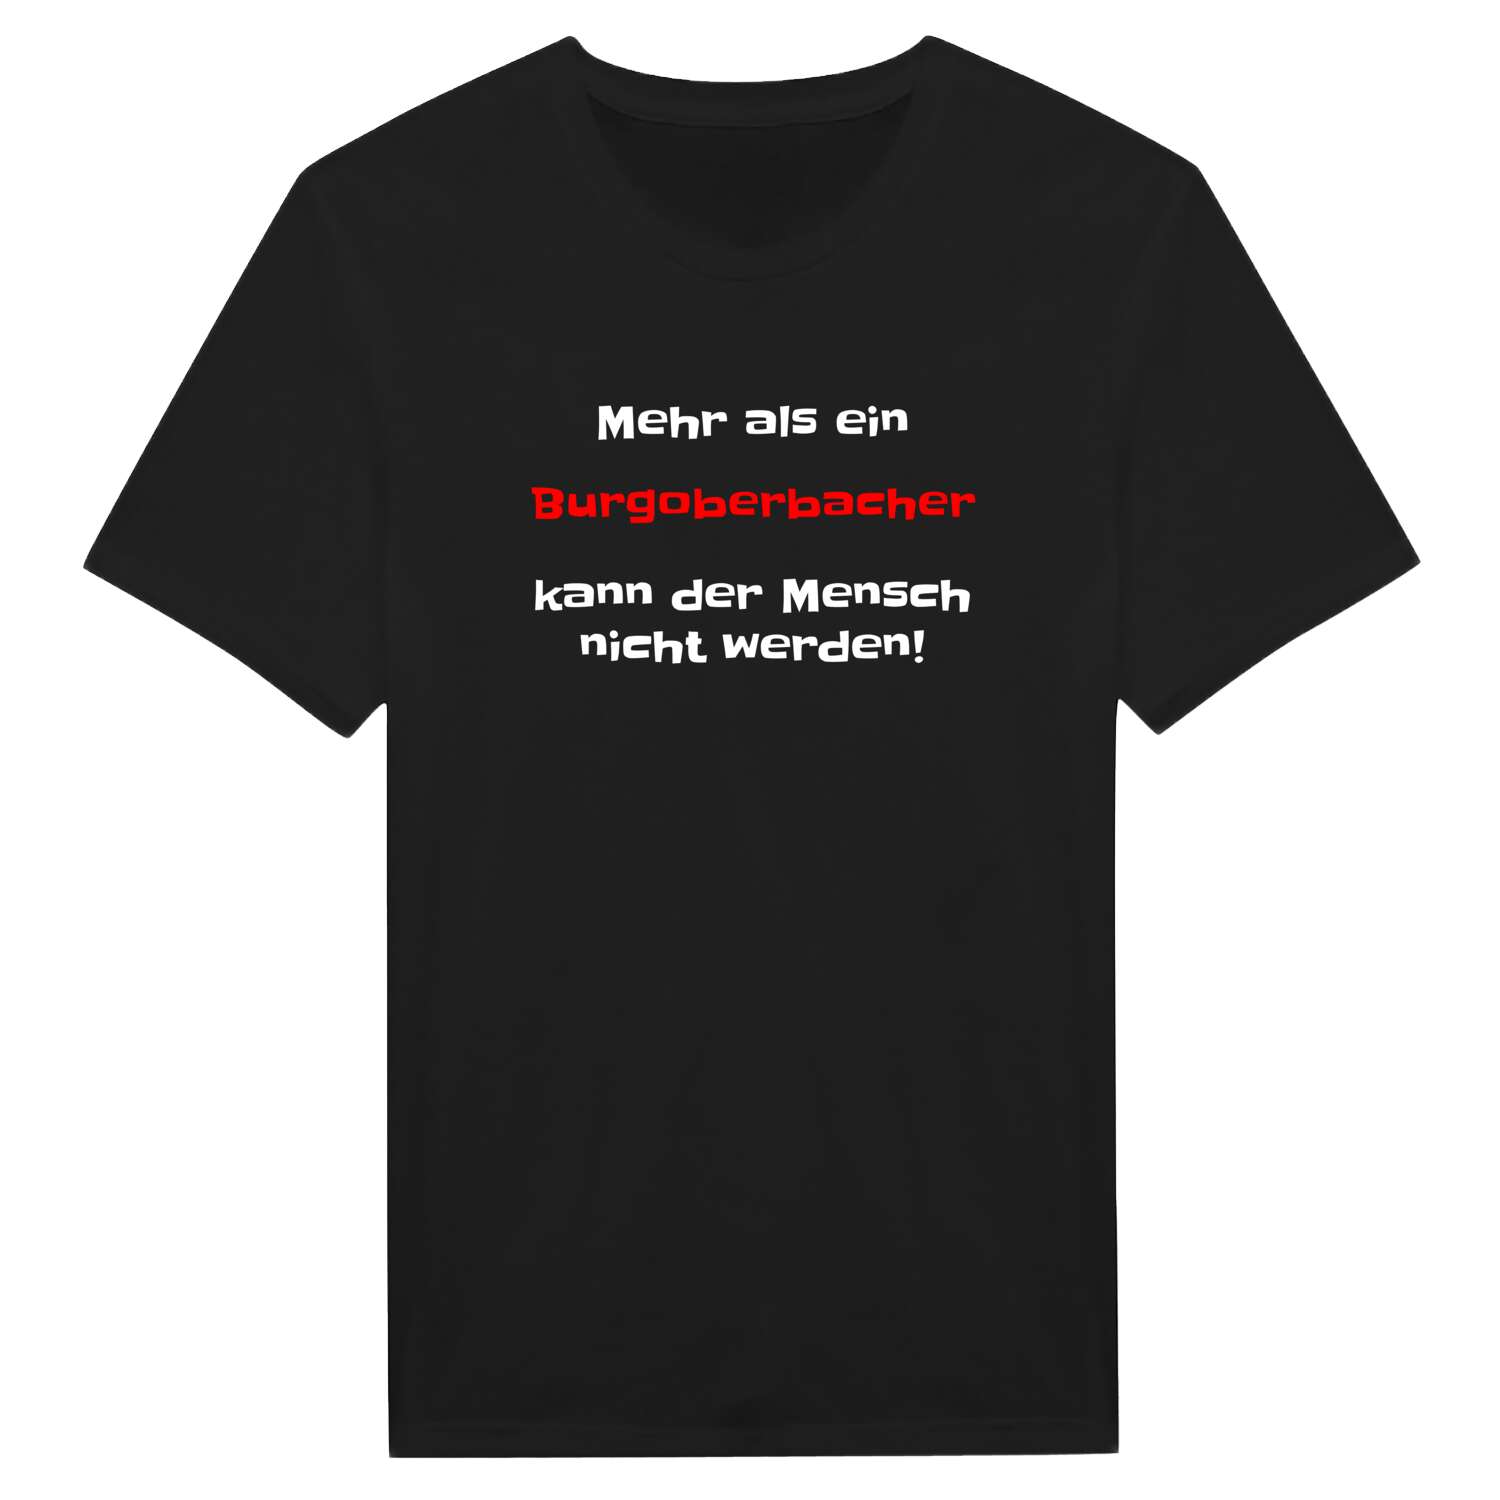 Burgoberbach T-Shirt »Mehr als ein«